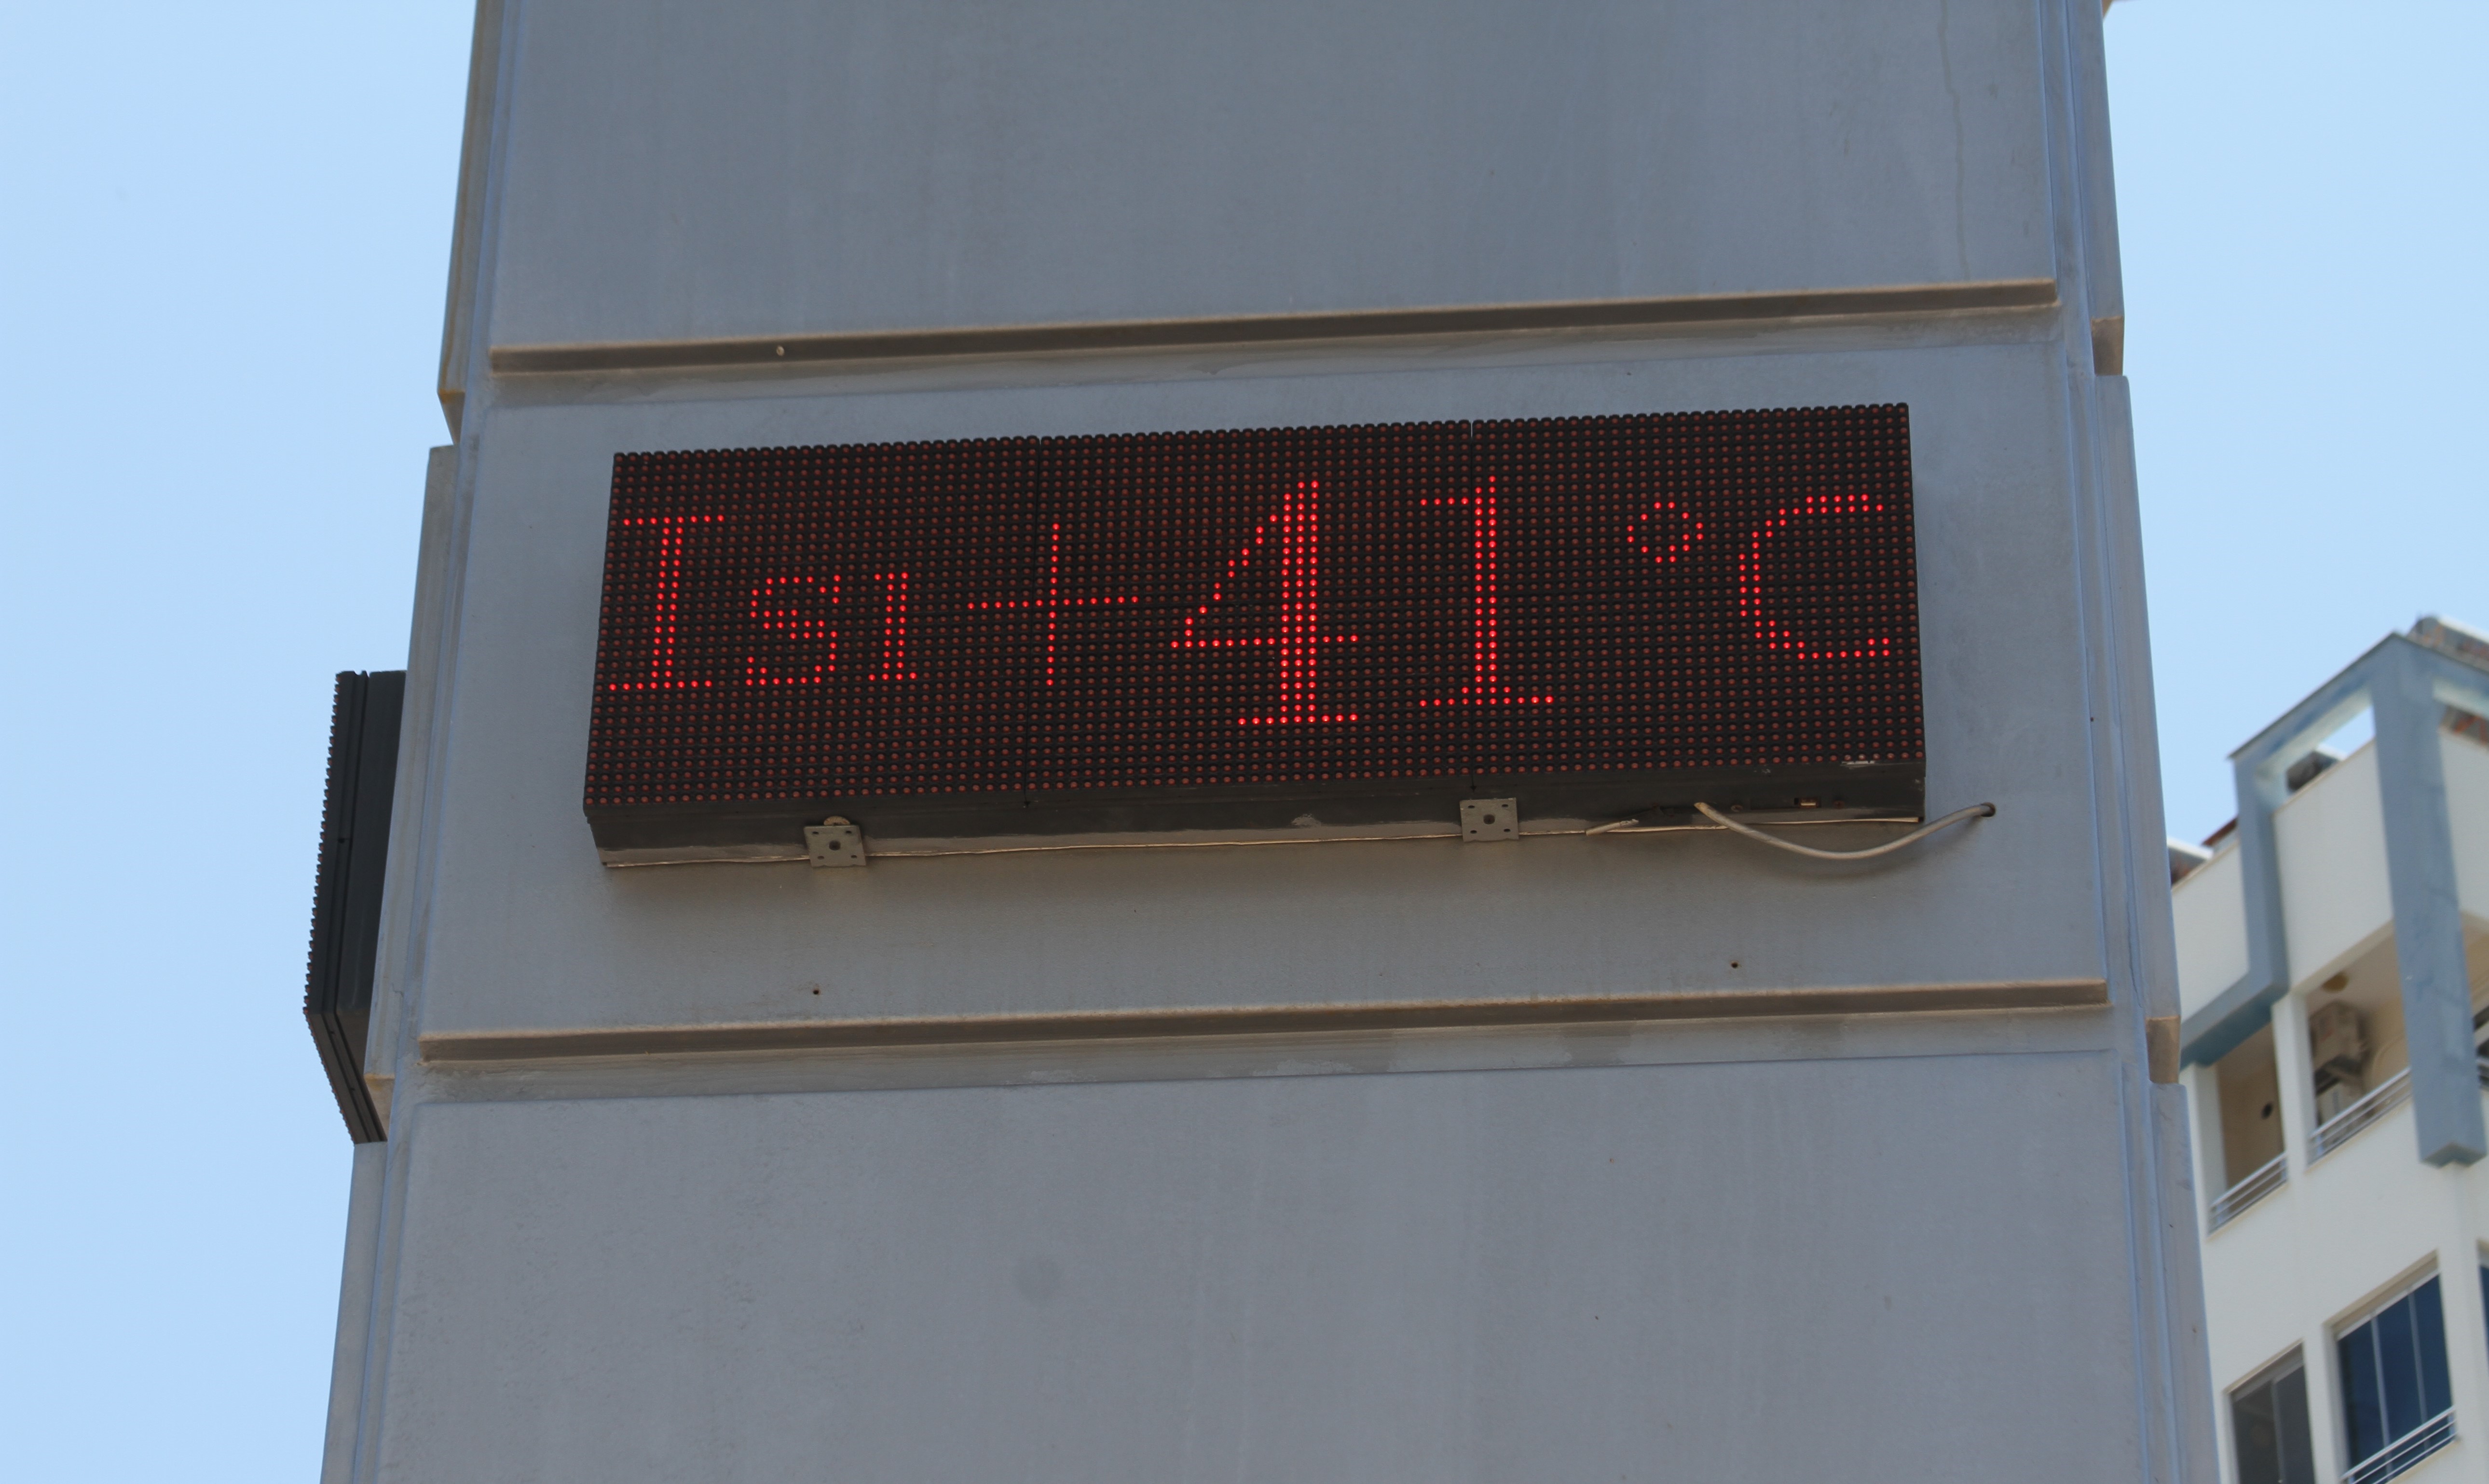 Termometreler 41 dereceyi gördü, sıcaktan bunalan deniz koştu